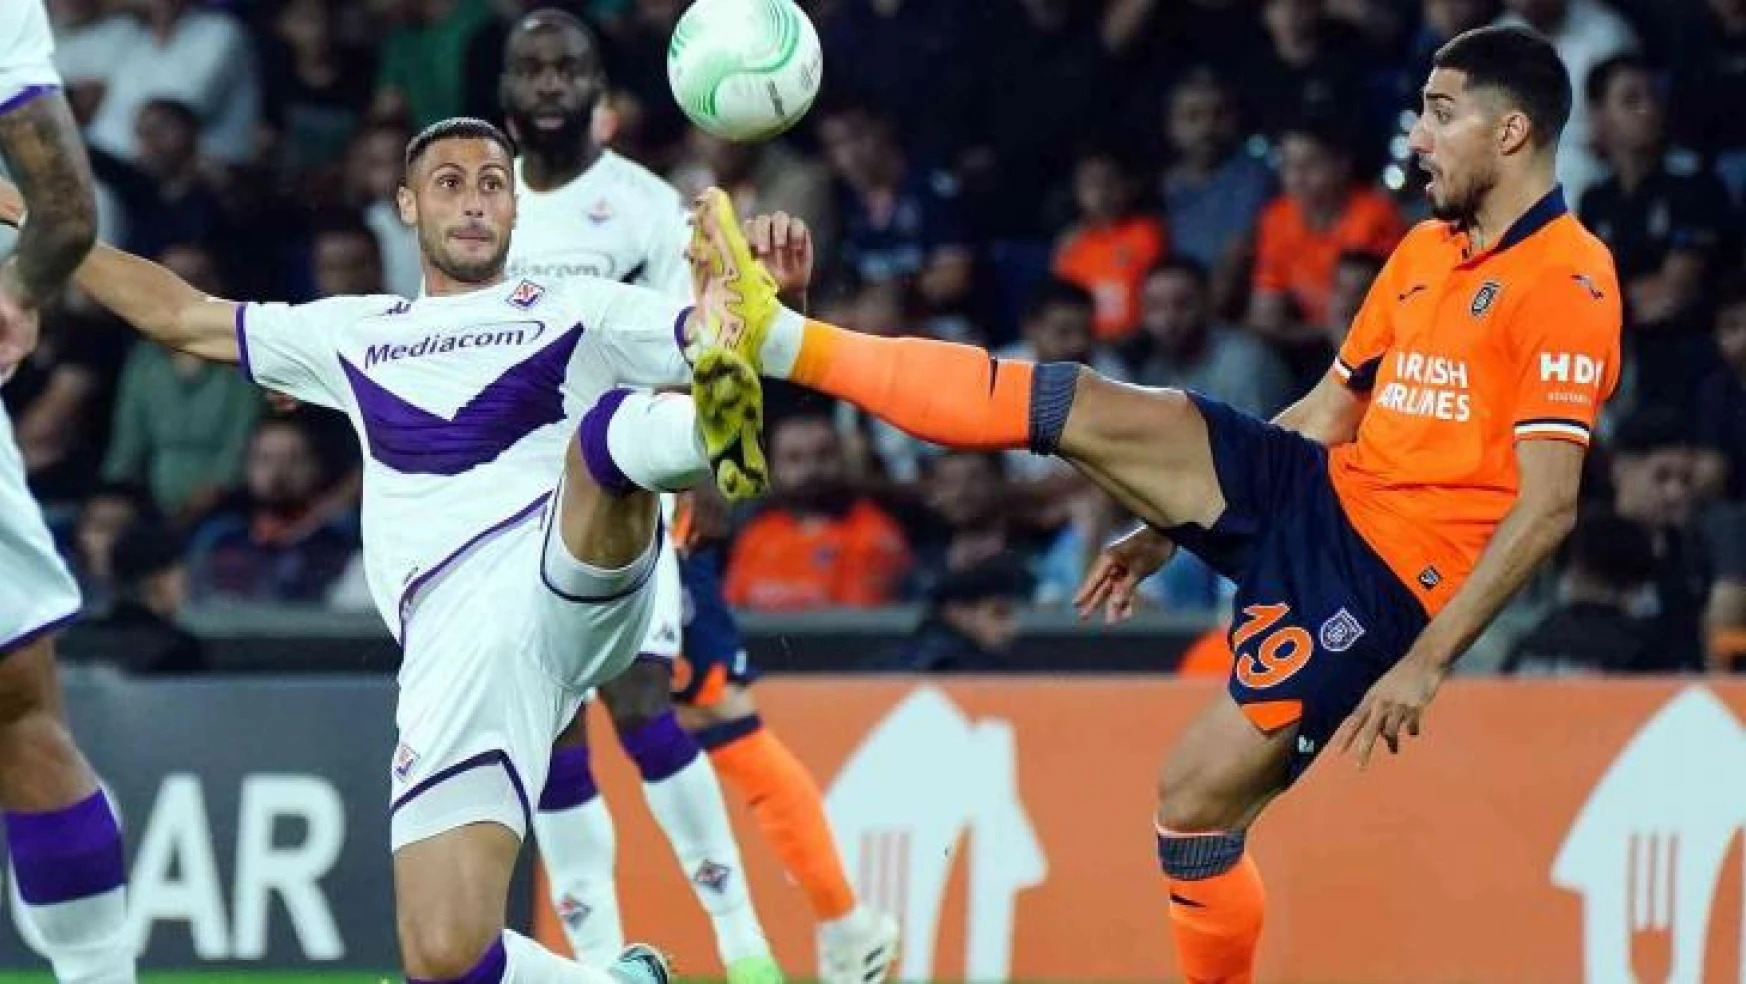 UEFA Konferans Ligi: Medipol Başakşehir: 0 - Fiorentina: 0 (Maç devam ediyor)